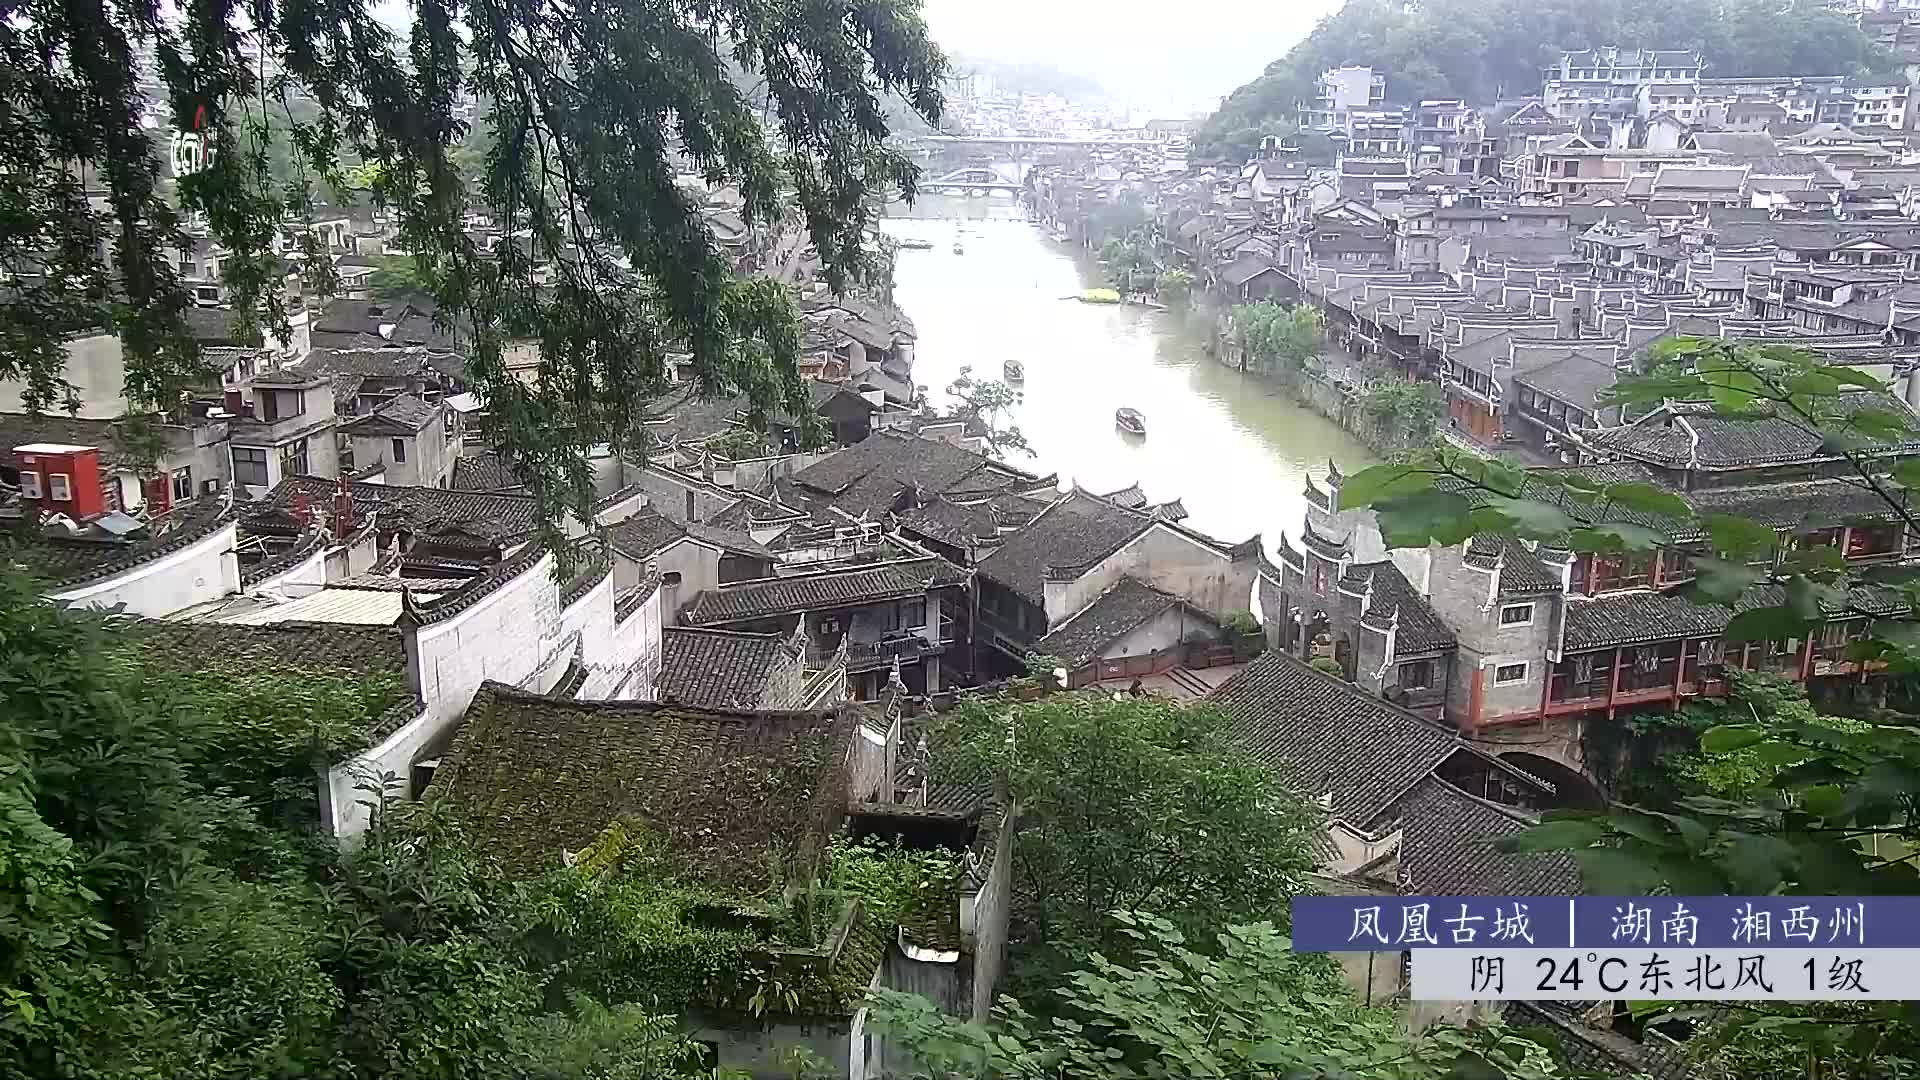 Fenghuang Di. 09:48